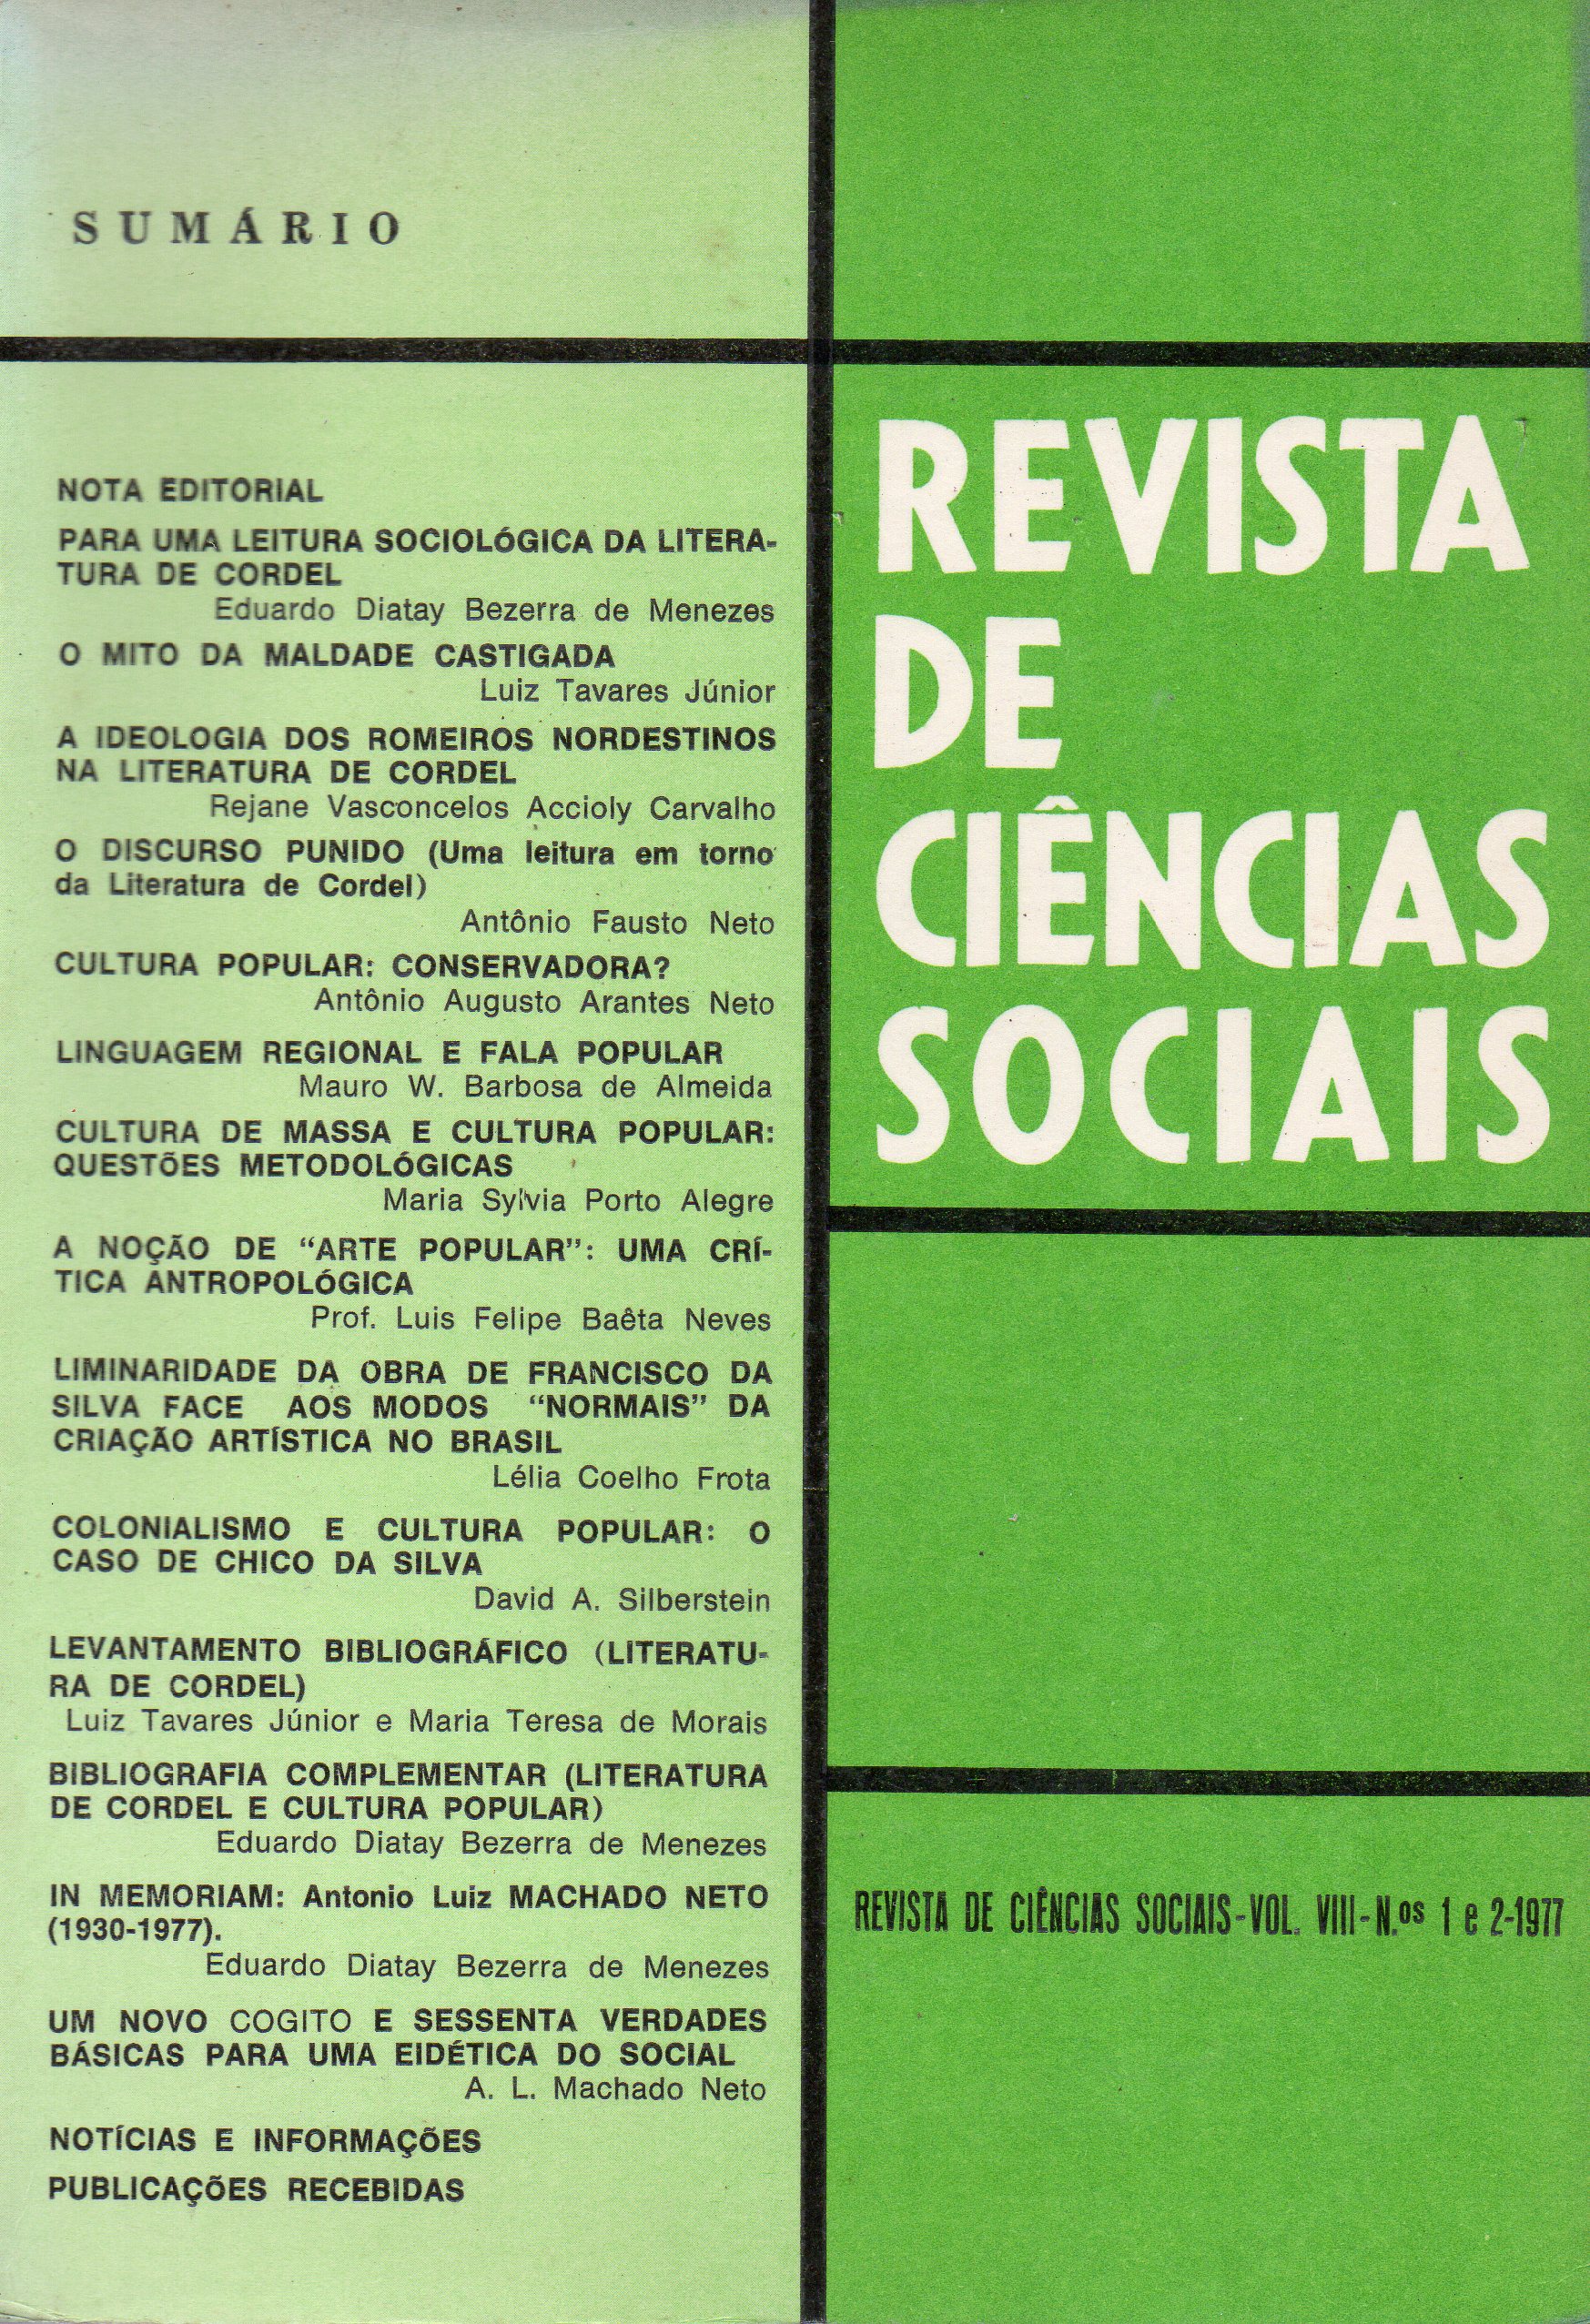 					View Vol. 8 No. 1 e 2 (1977): Revista de Ciências Sociais
				